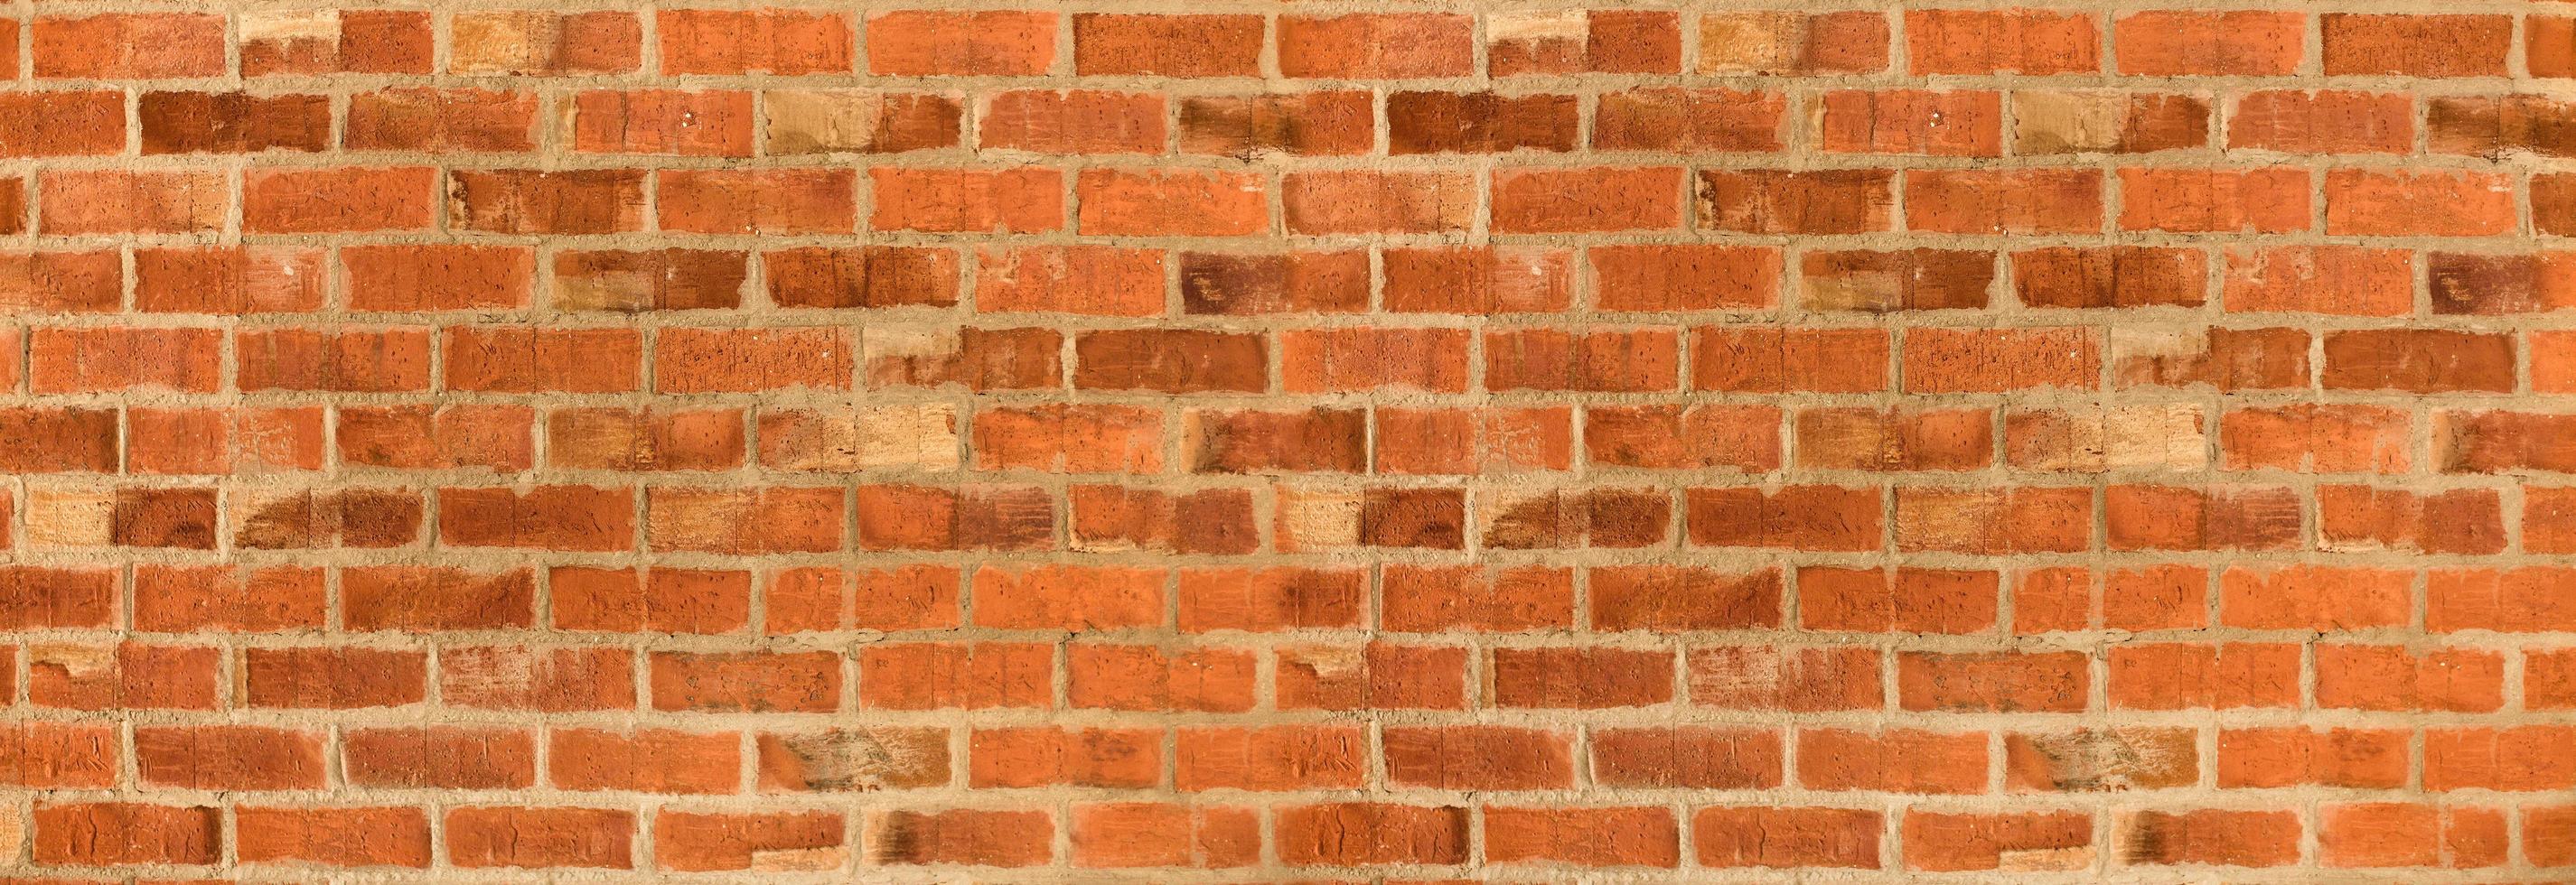 Panorama der orange Backsteinmauer Textur oder Hintergrund foto